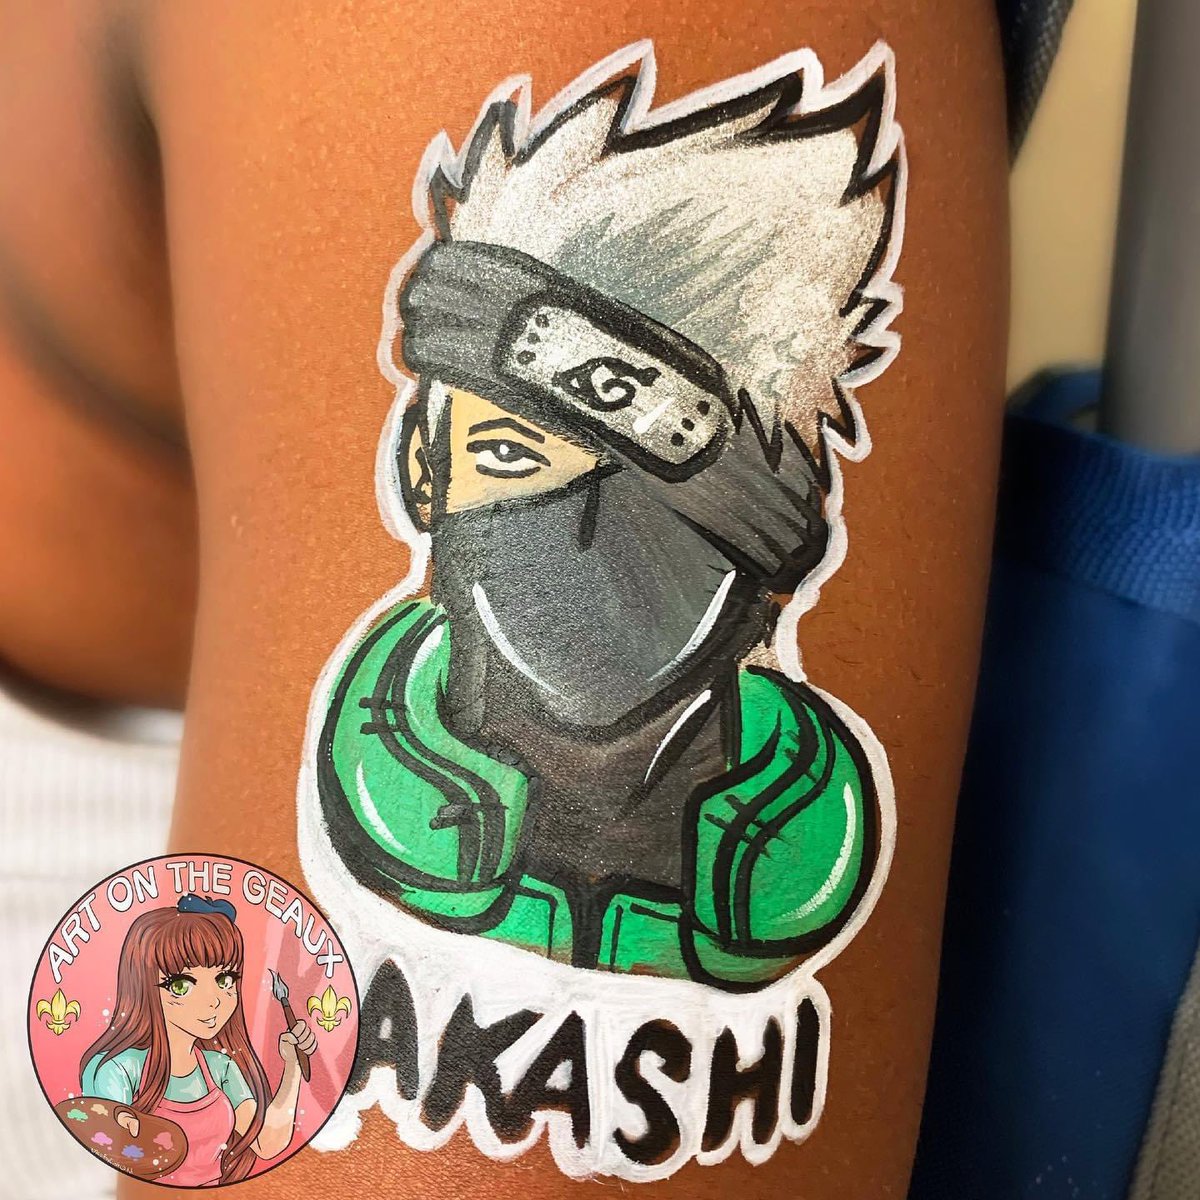 🥷🏻 Kakashi 🥷🏻
#NARUTO #Kakashi #kakashihatake